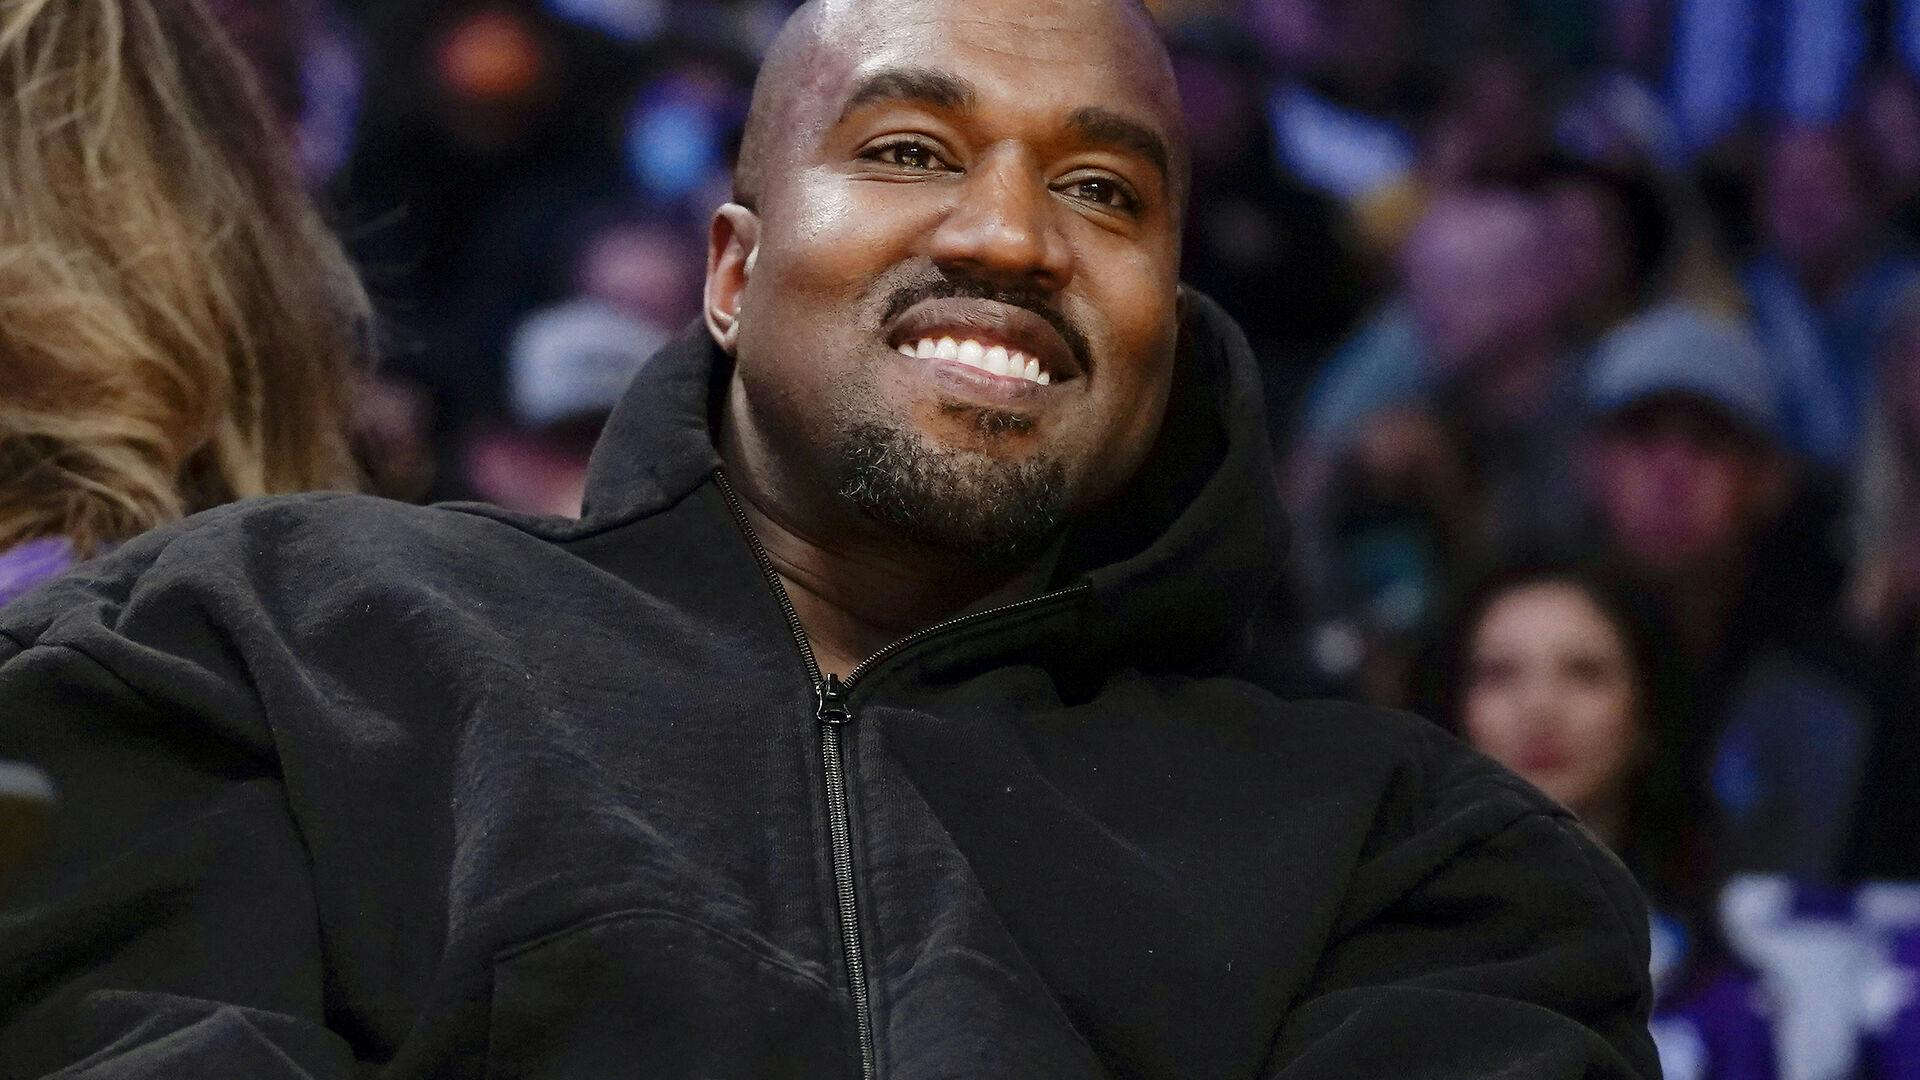 Har Kanye West fundet kærligheden på ny?